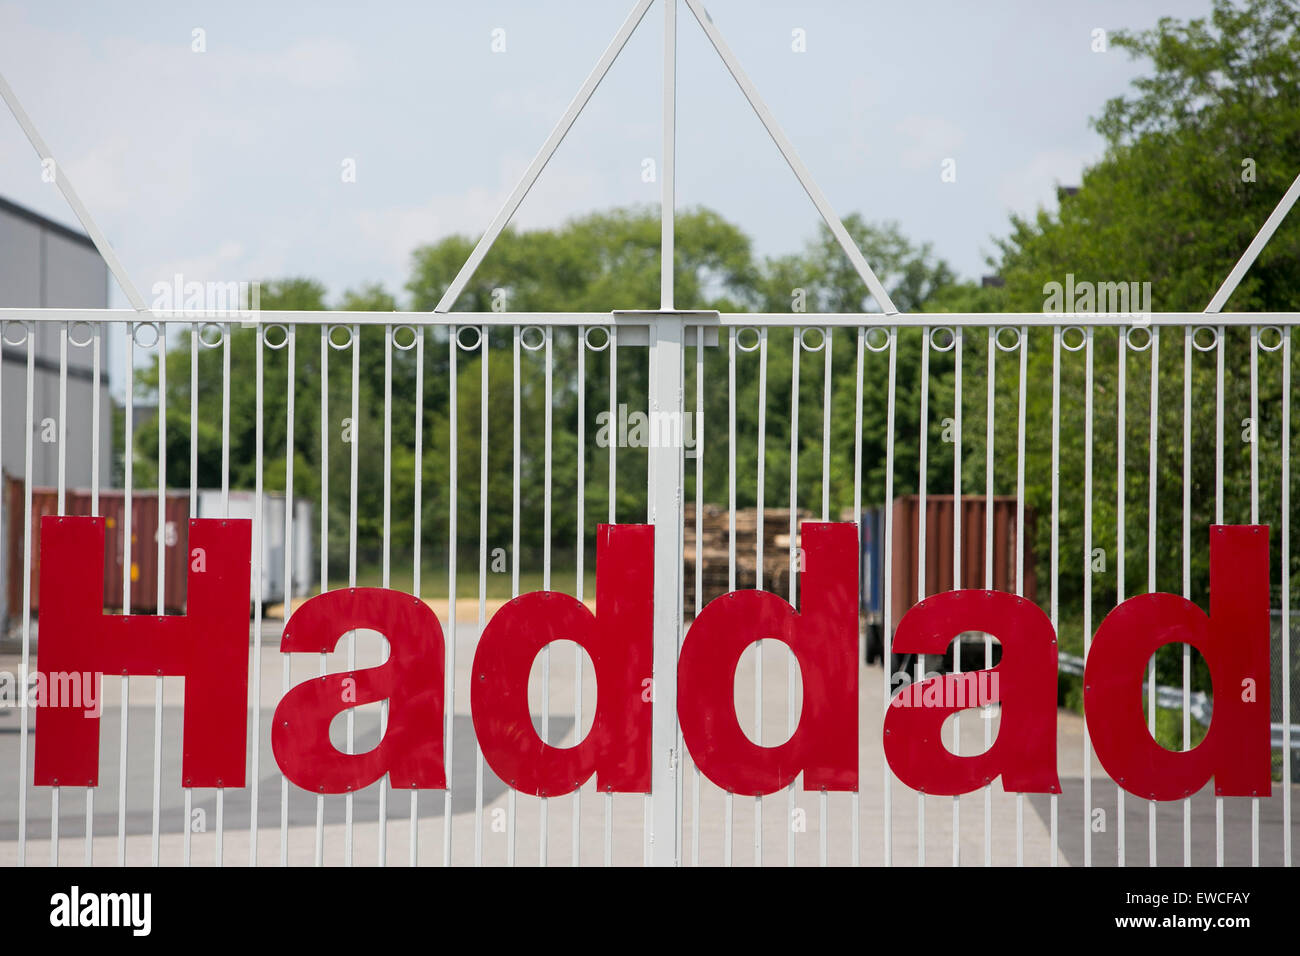 Ein Logo Zeichen außerhalb einer Einrichtung von Haddad in Cranbury, New Jersey besetzt. Stockfoto